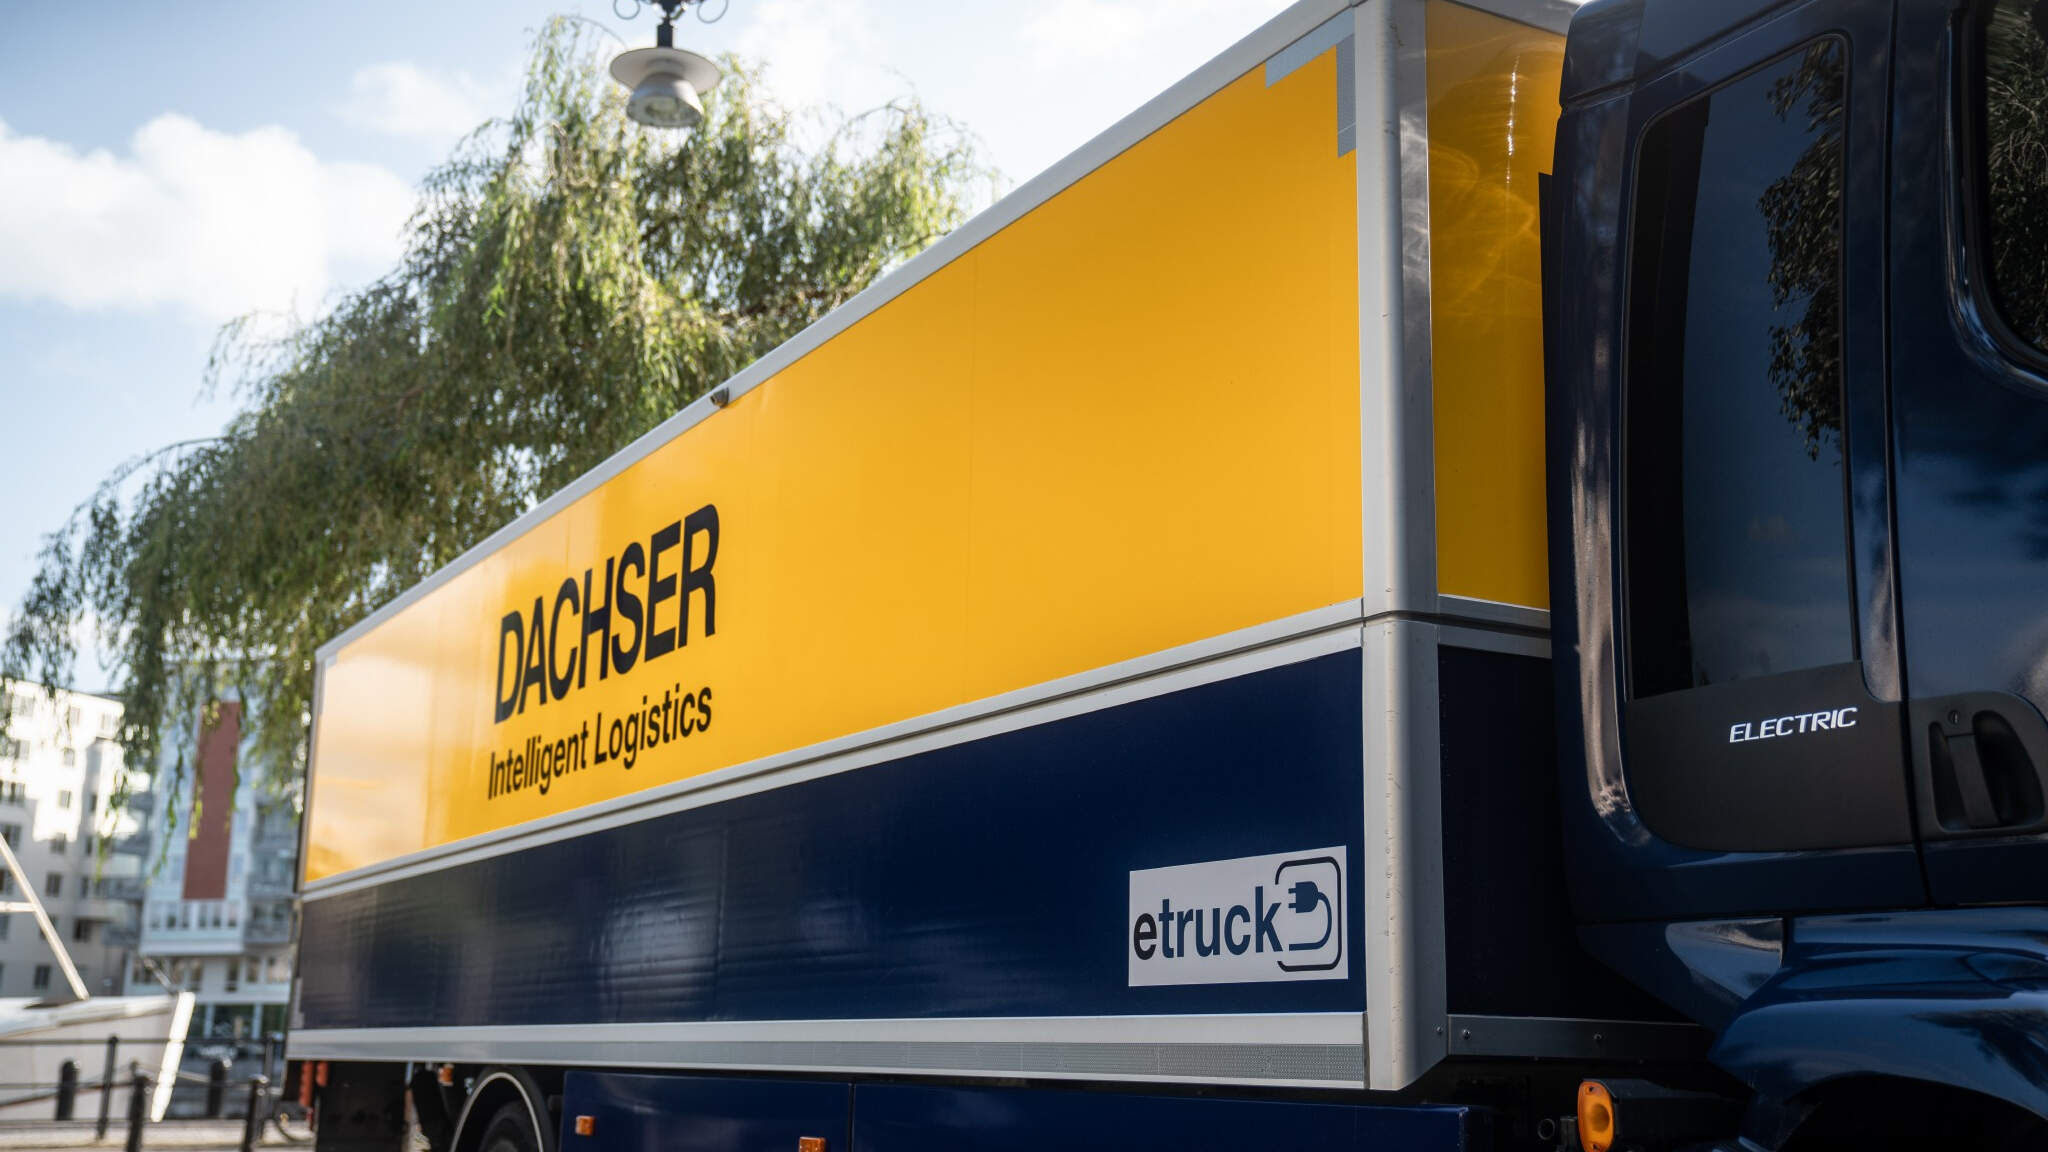 DACHSER incorpora nuevas tractoras eléctricas a su flota de transporte en España